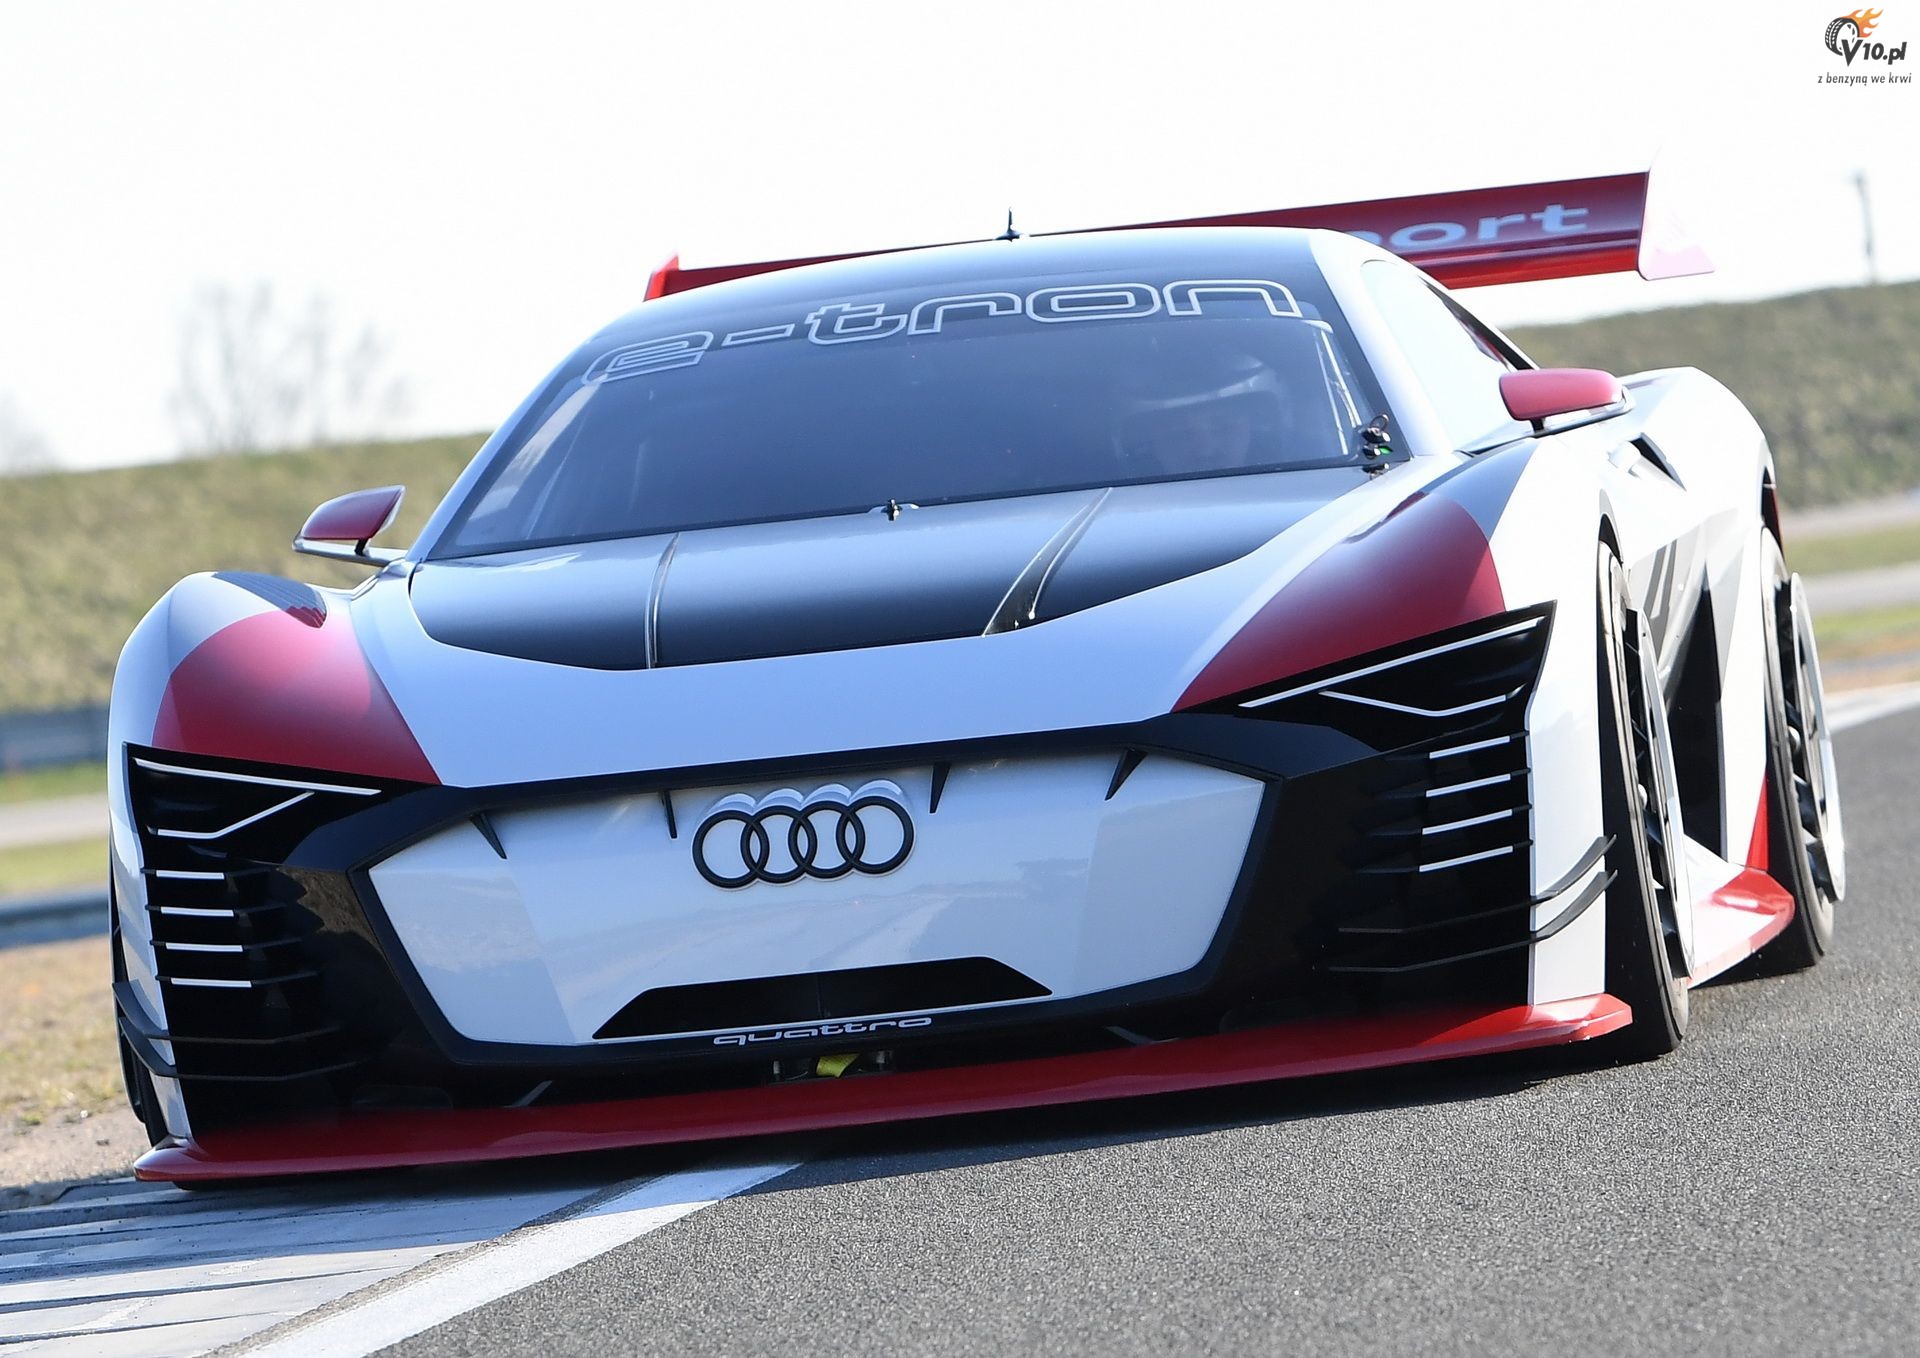 Audi e-Tron Vision Gran Turismo